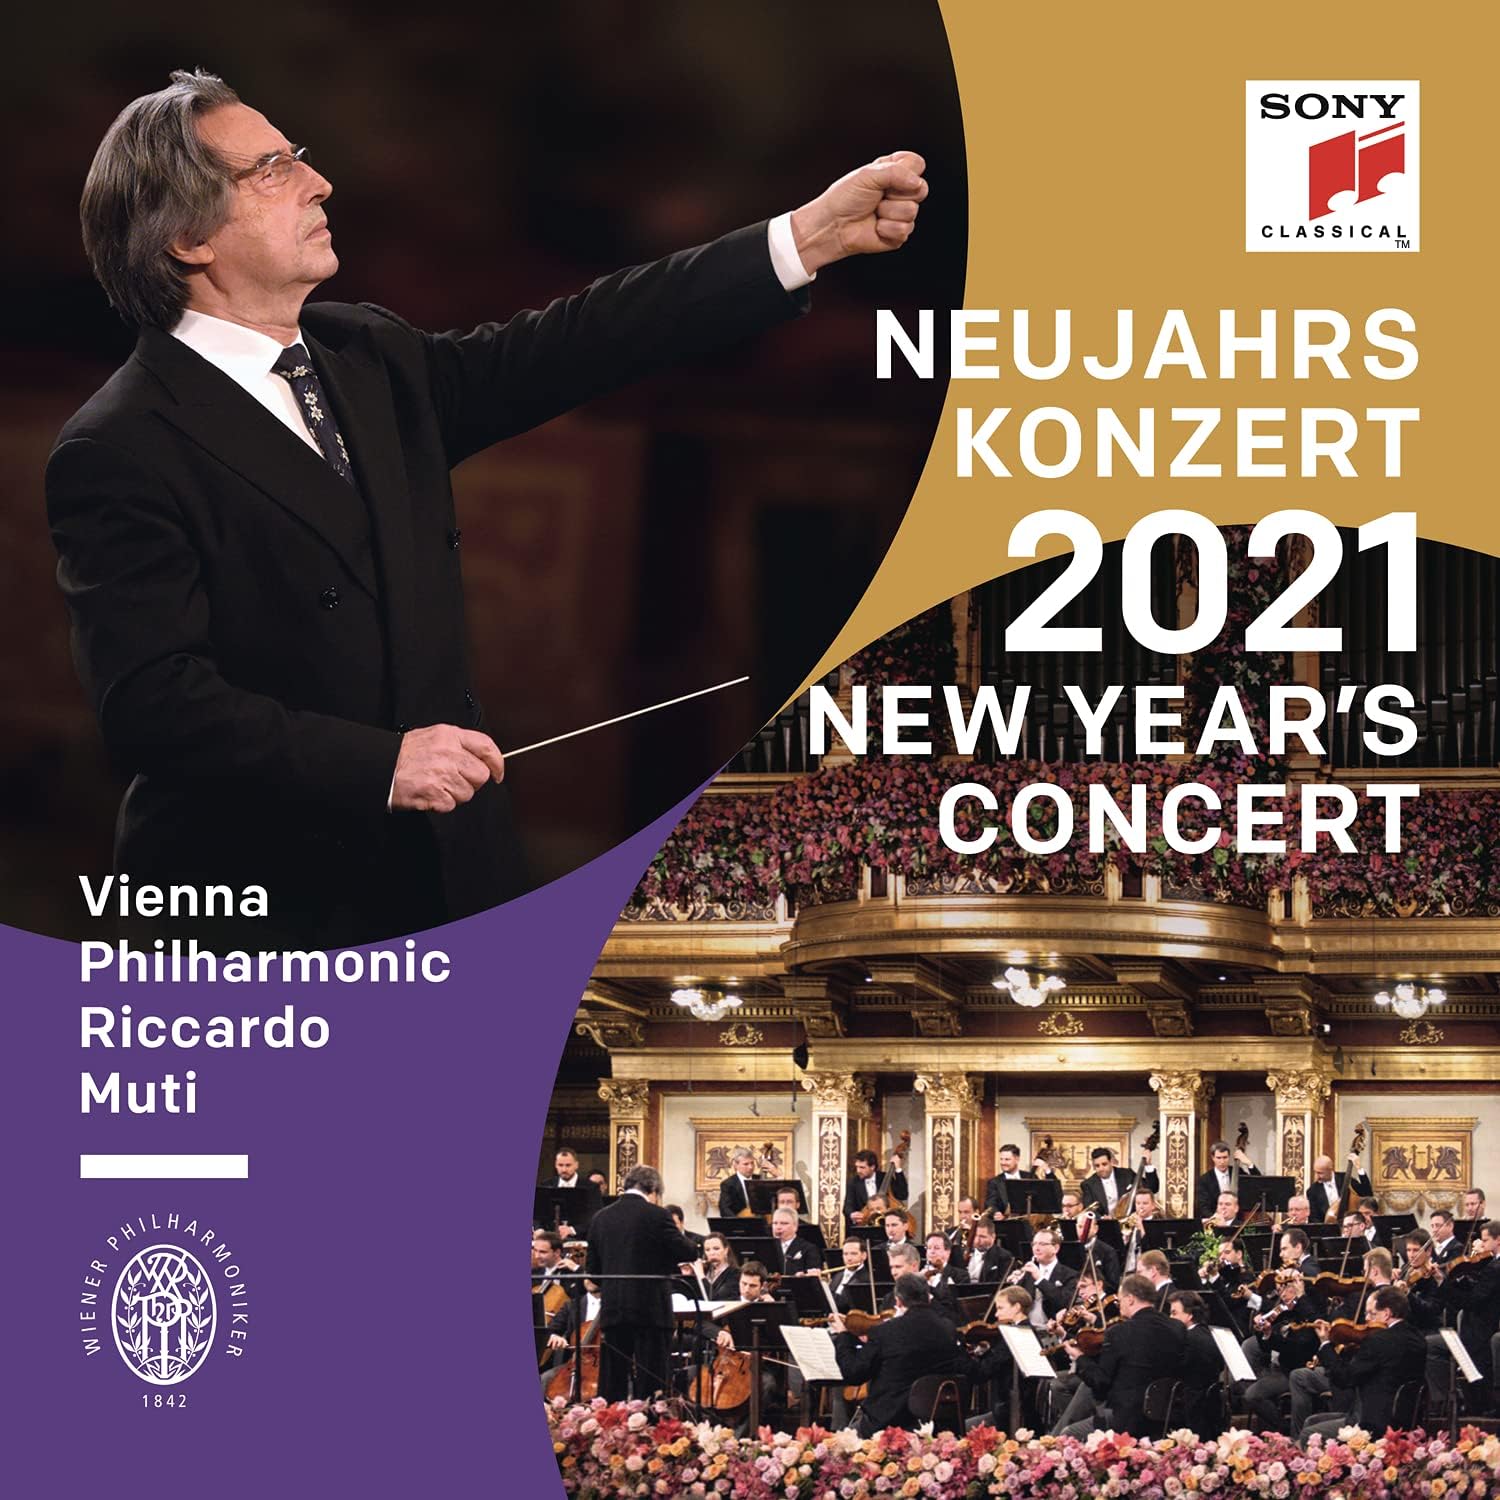 Neujahrskonzert 2021 / New Year\'s Concert 2021 | Vienna Philharmonic, Riccardo Muti